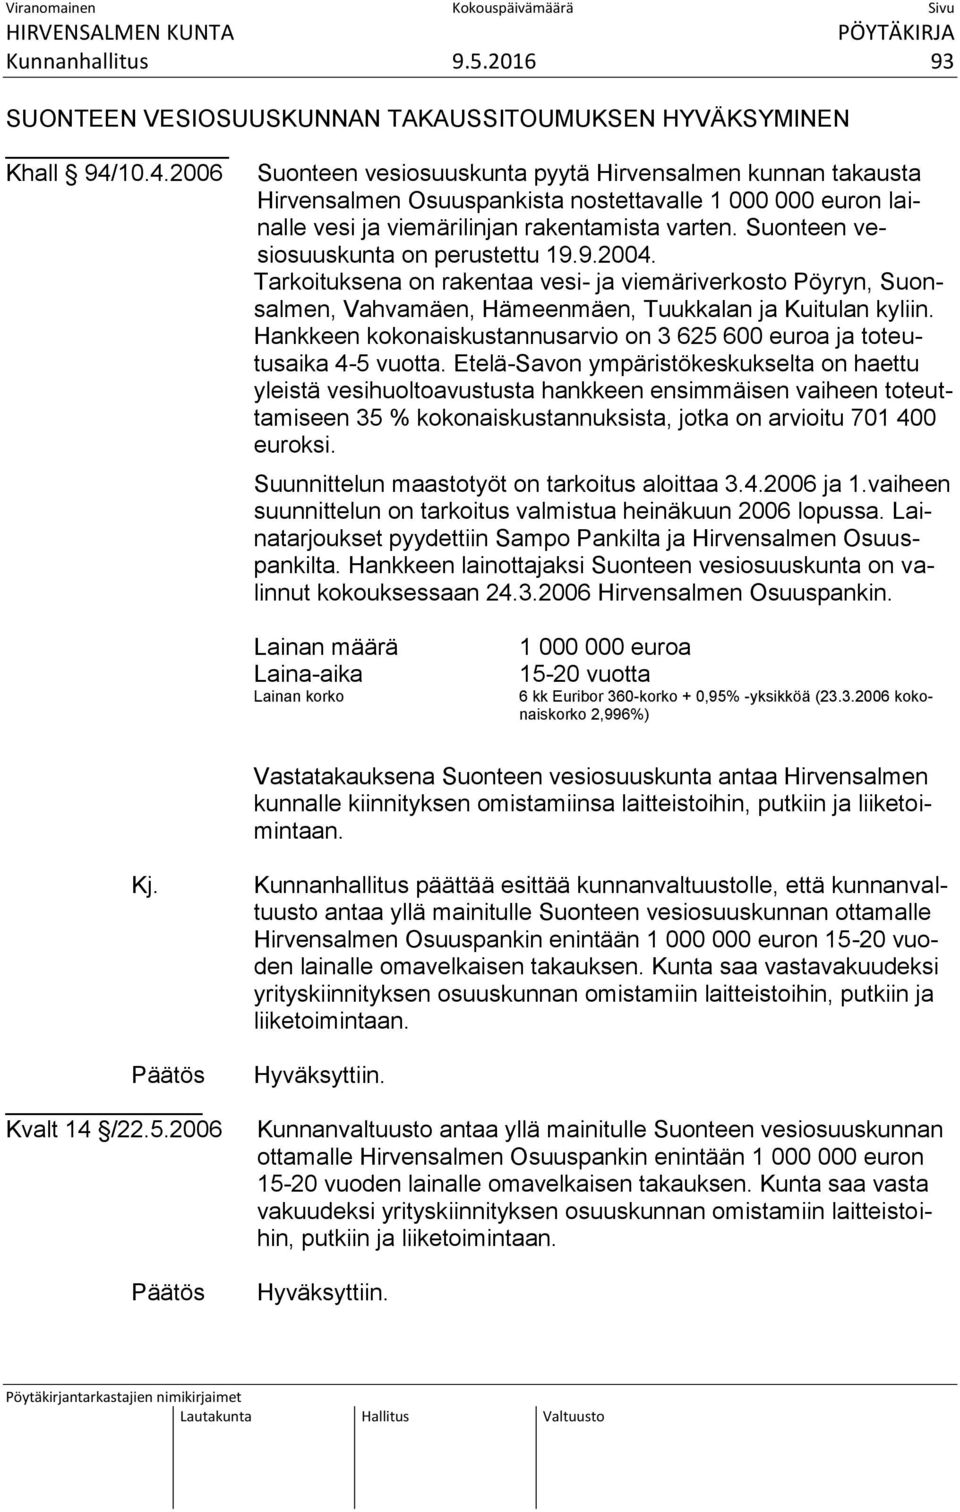 Suonteen vesiosuuskunta on perustettu 19.9.2004. Tarkoituksena on rakentaa vesi- ja viemäriverkosto Pöyryn, Suonsalmen, Vahvamäen, Hämeenmäen, Tuukkalan ja Kuitulan kyliin.